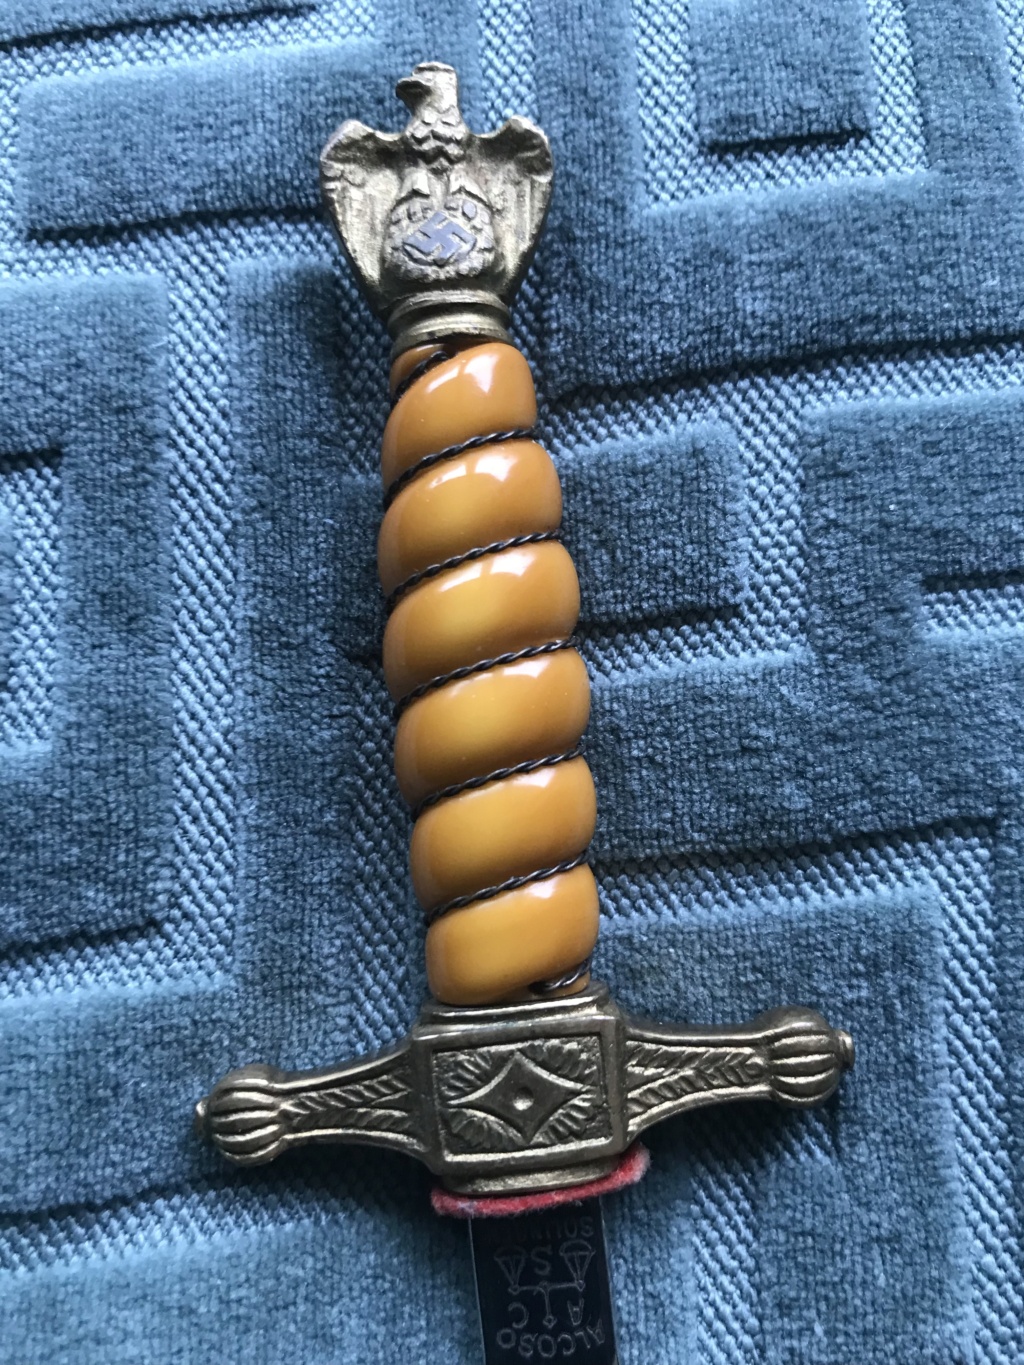 Miniature Alcoso (4 )  - La dague de la Marine. 0b6b3810